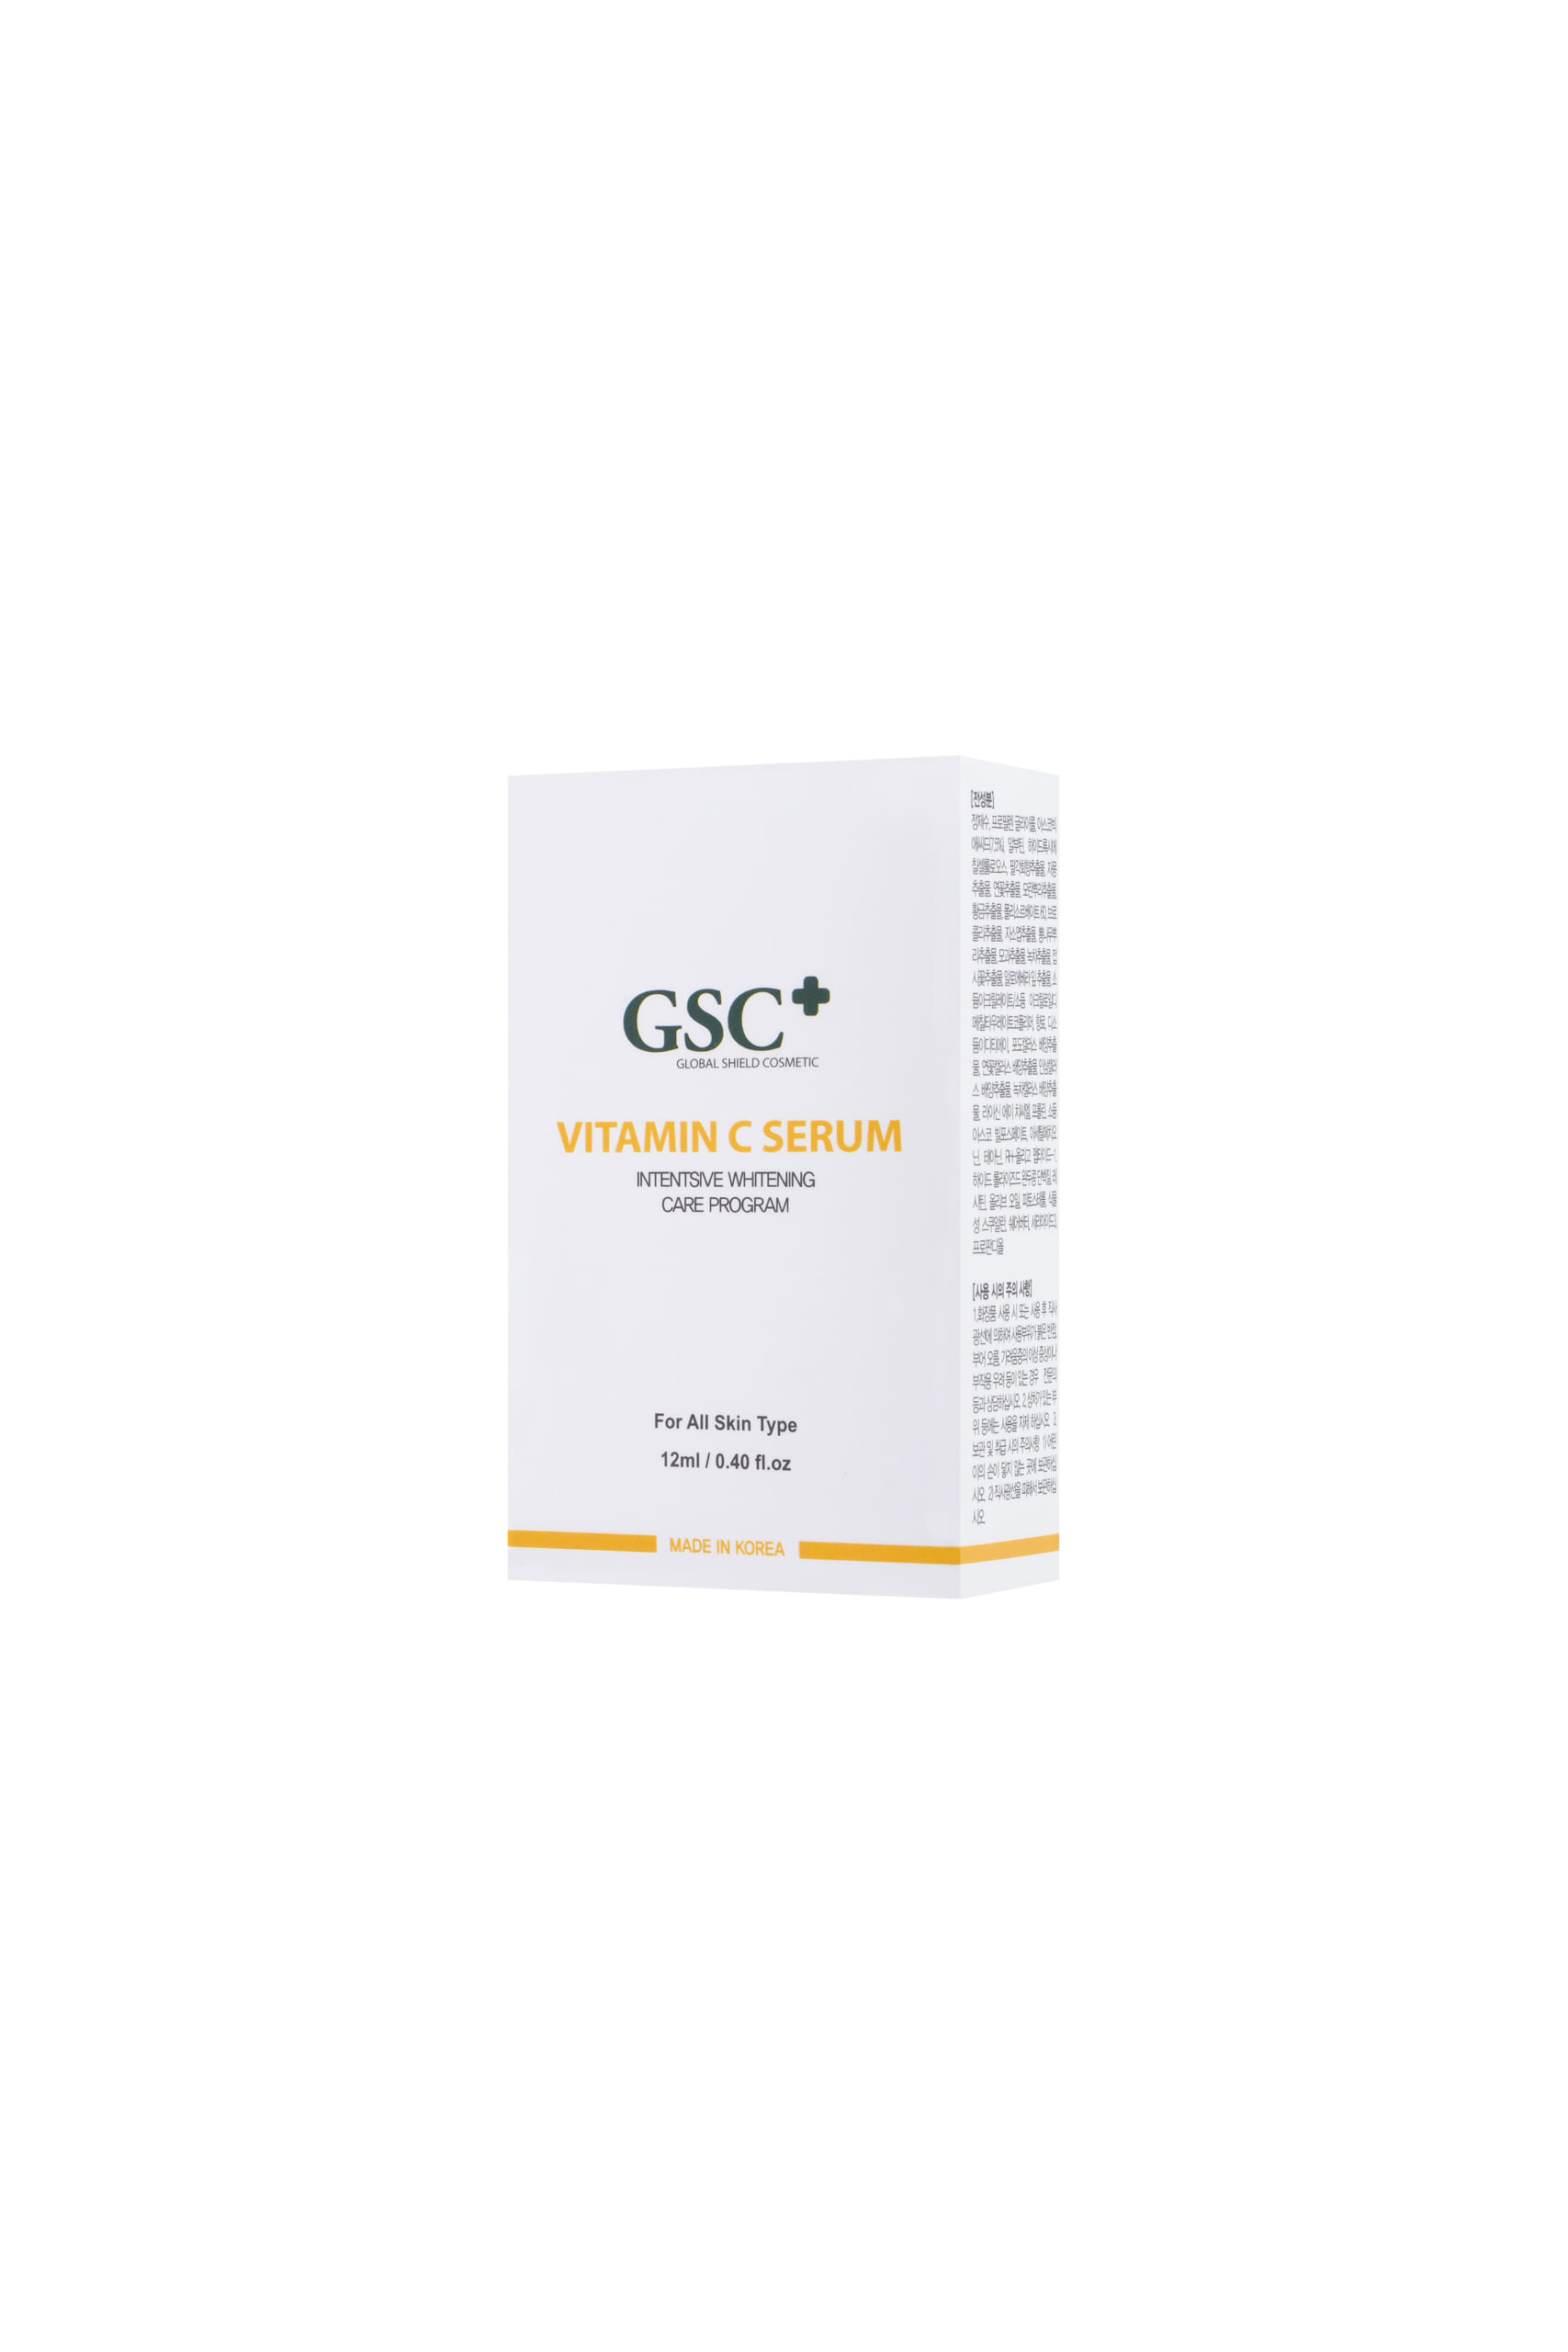 Tinh Chất GSC Vitamin C Serum - Dạng Tinh Chất 12ml - Cung Cấp Vitamin C Và Trẻ Hóa Làn Da - Mỹ Phẩm Chính Hãng GSC Nhập Khẩu Hàn Quốc